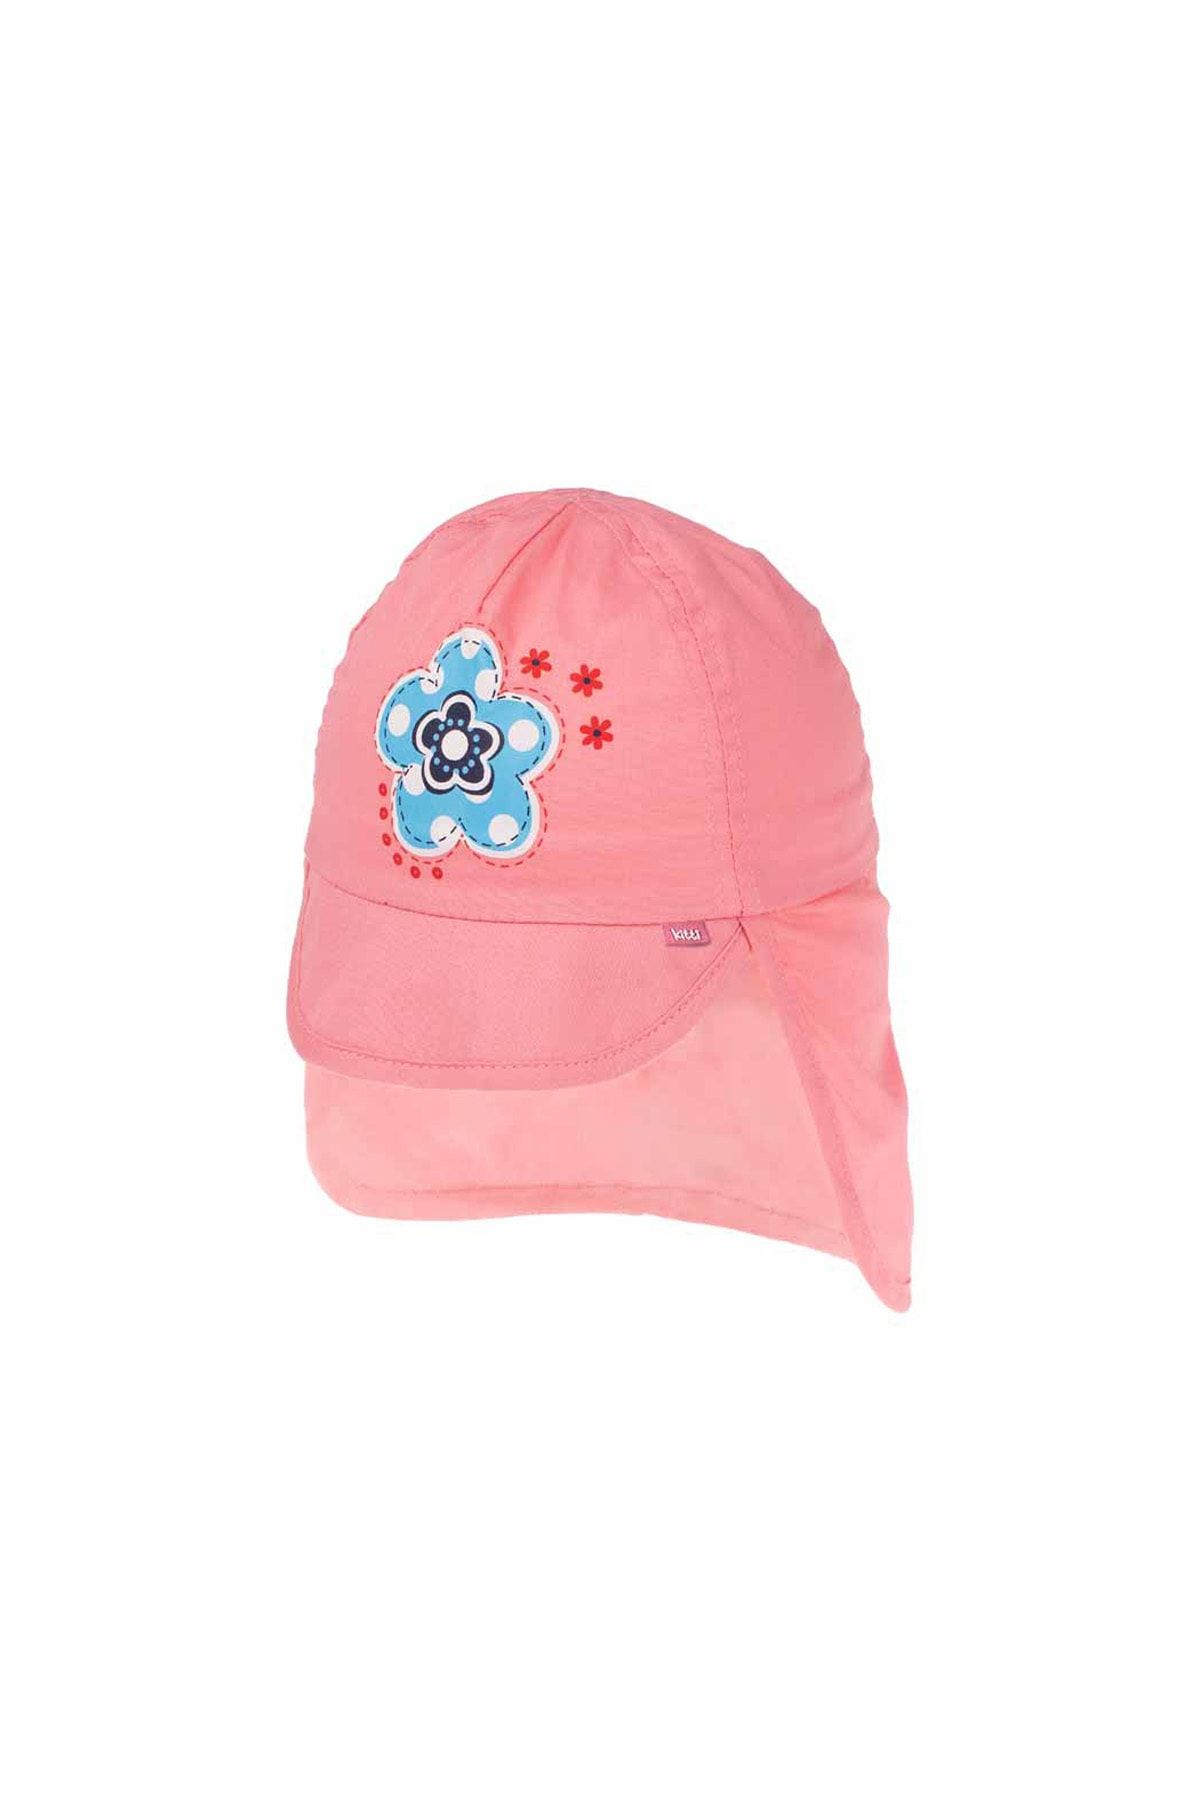 MİNİKO KİDS Kitti 2140-01 Kız Çocuk Güneş Korumalı Şapka